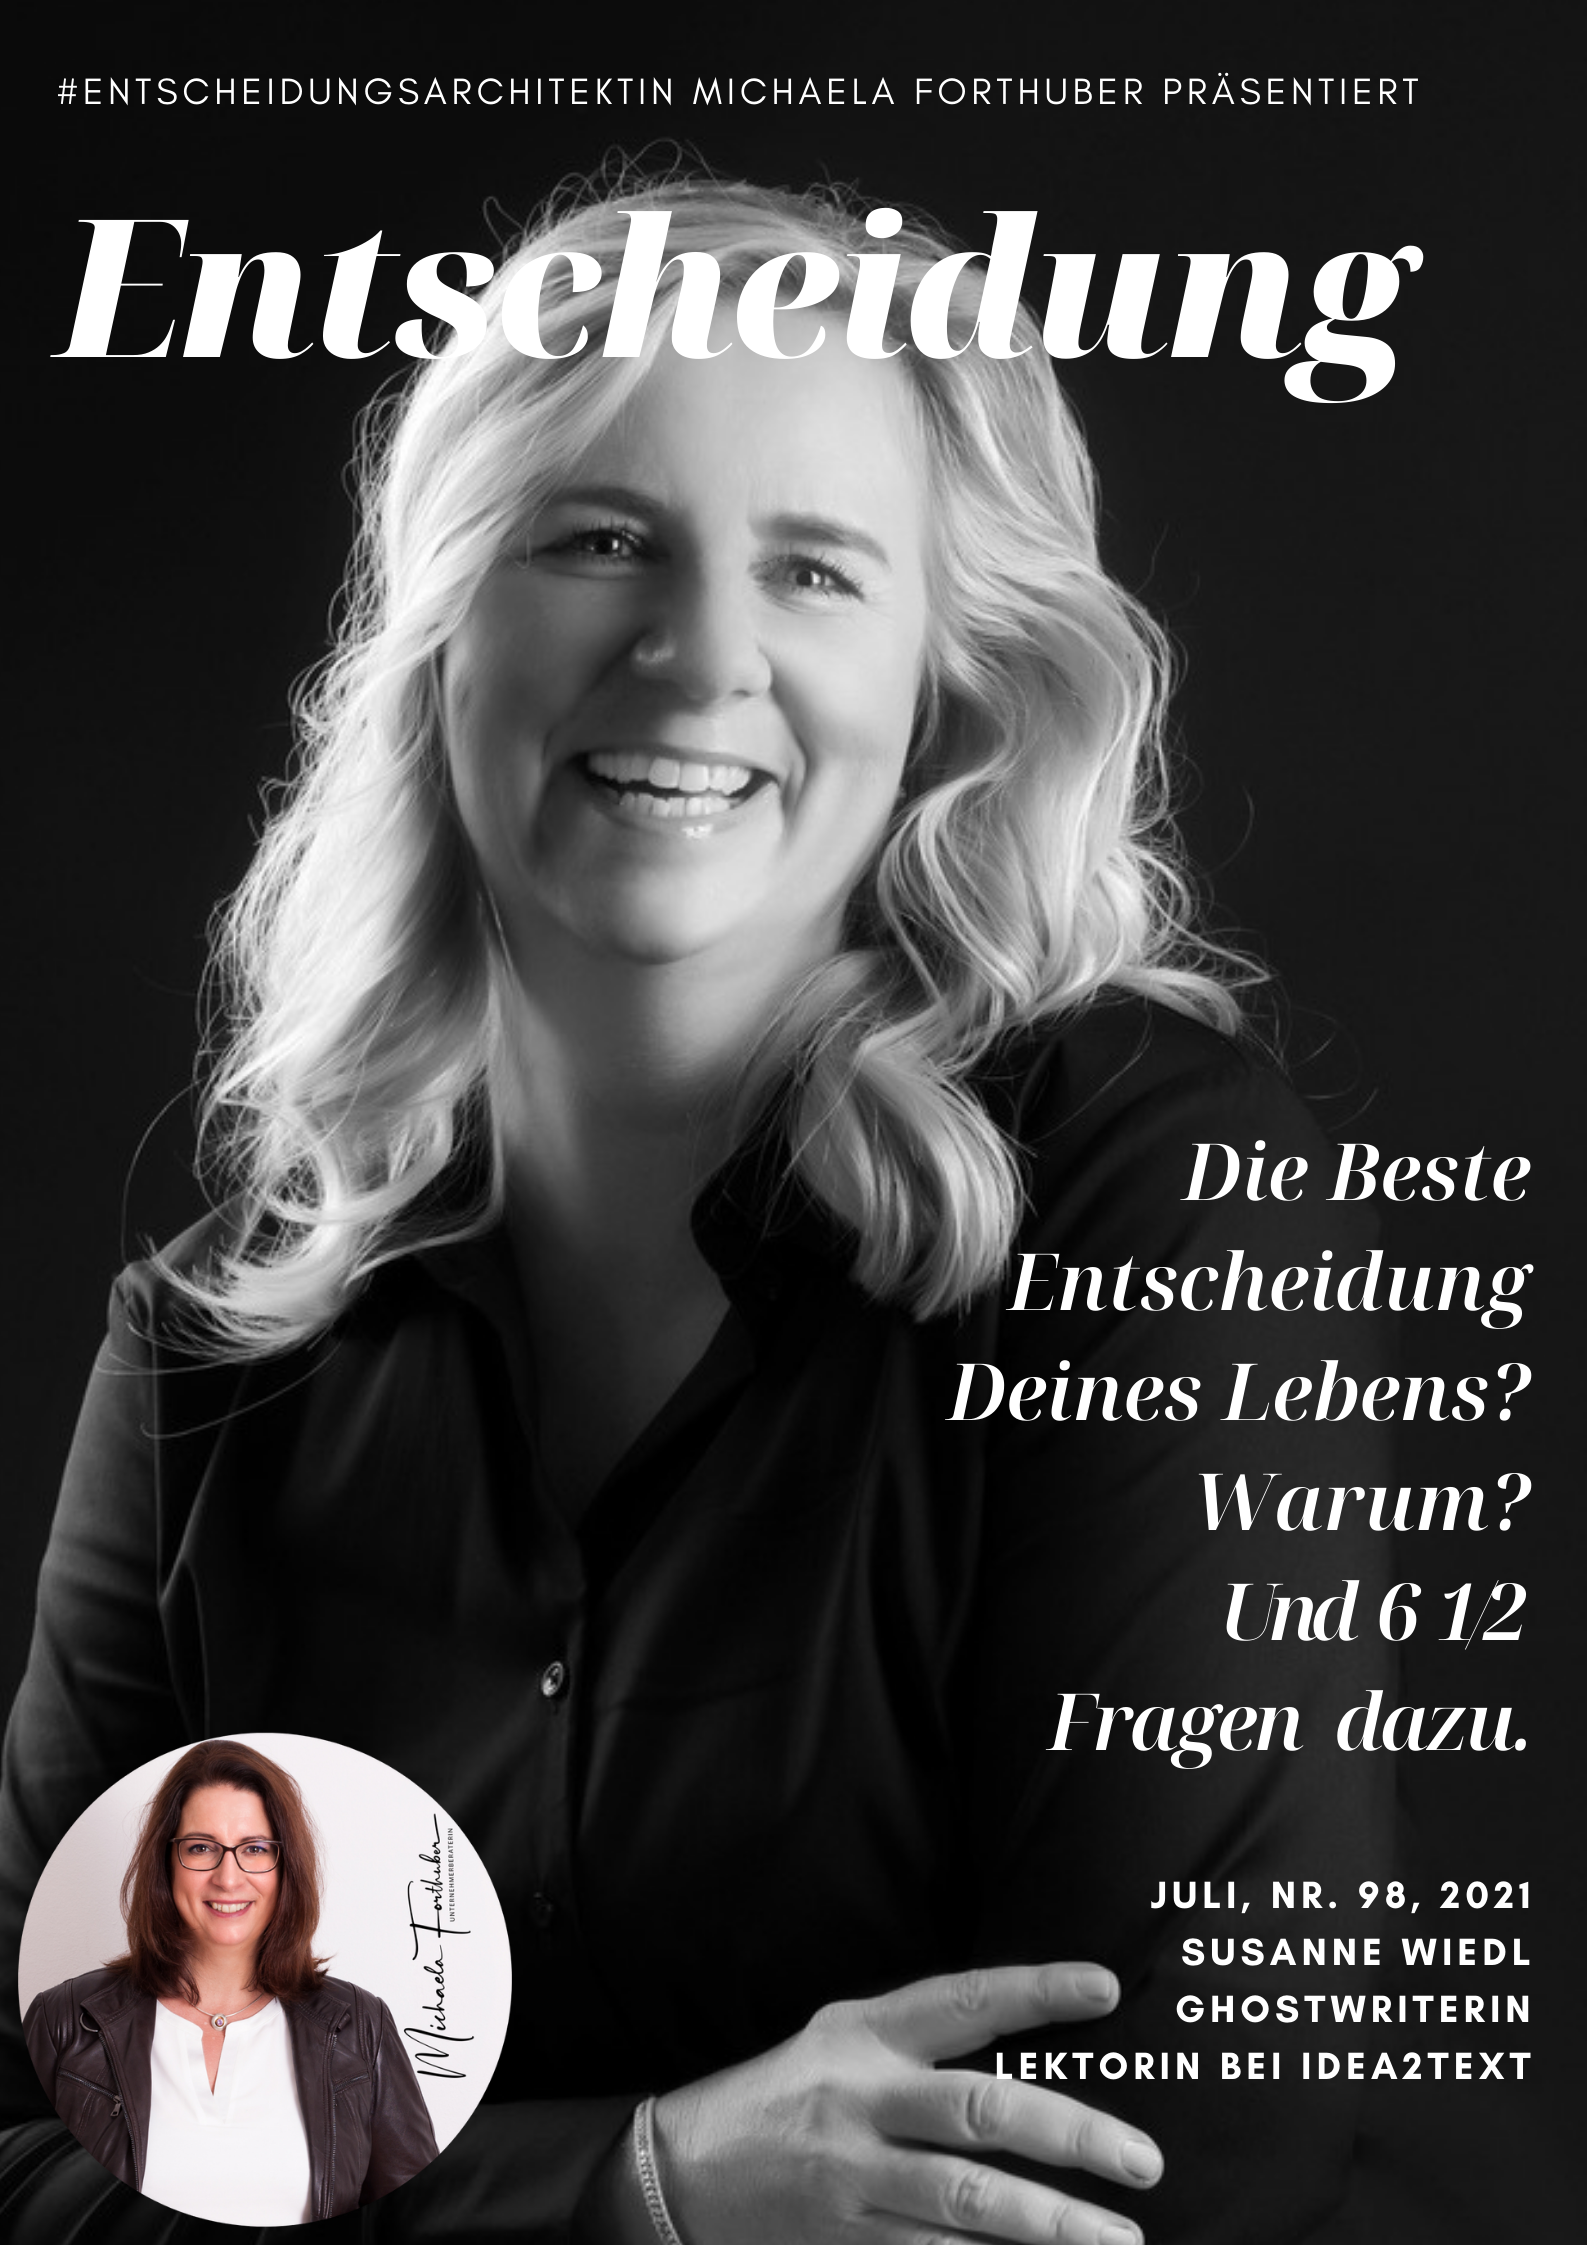 Blog Interview Entscheiden Cover Michaela Forthuber #Entscheidungsarchitektin mit Susanne Wiedl